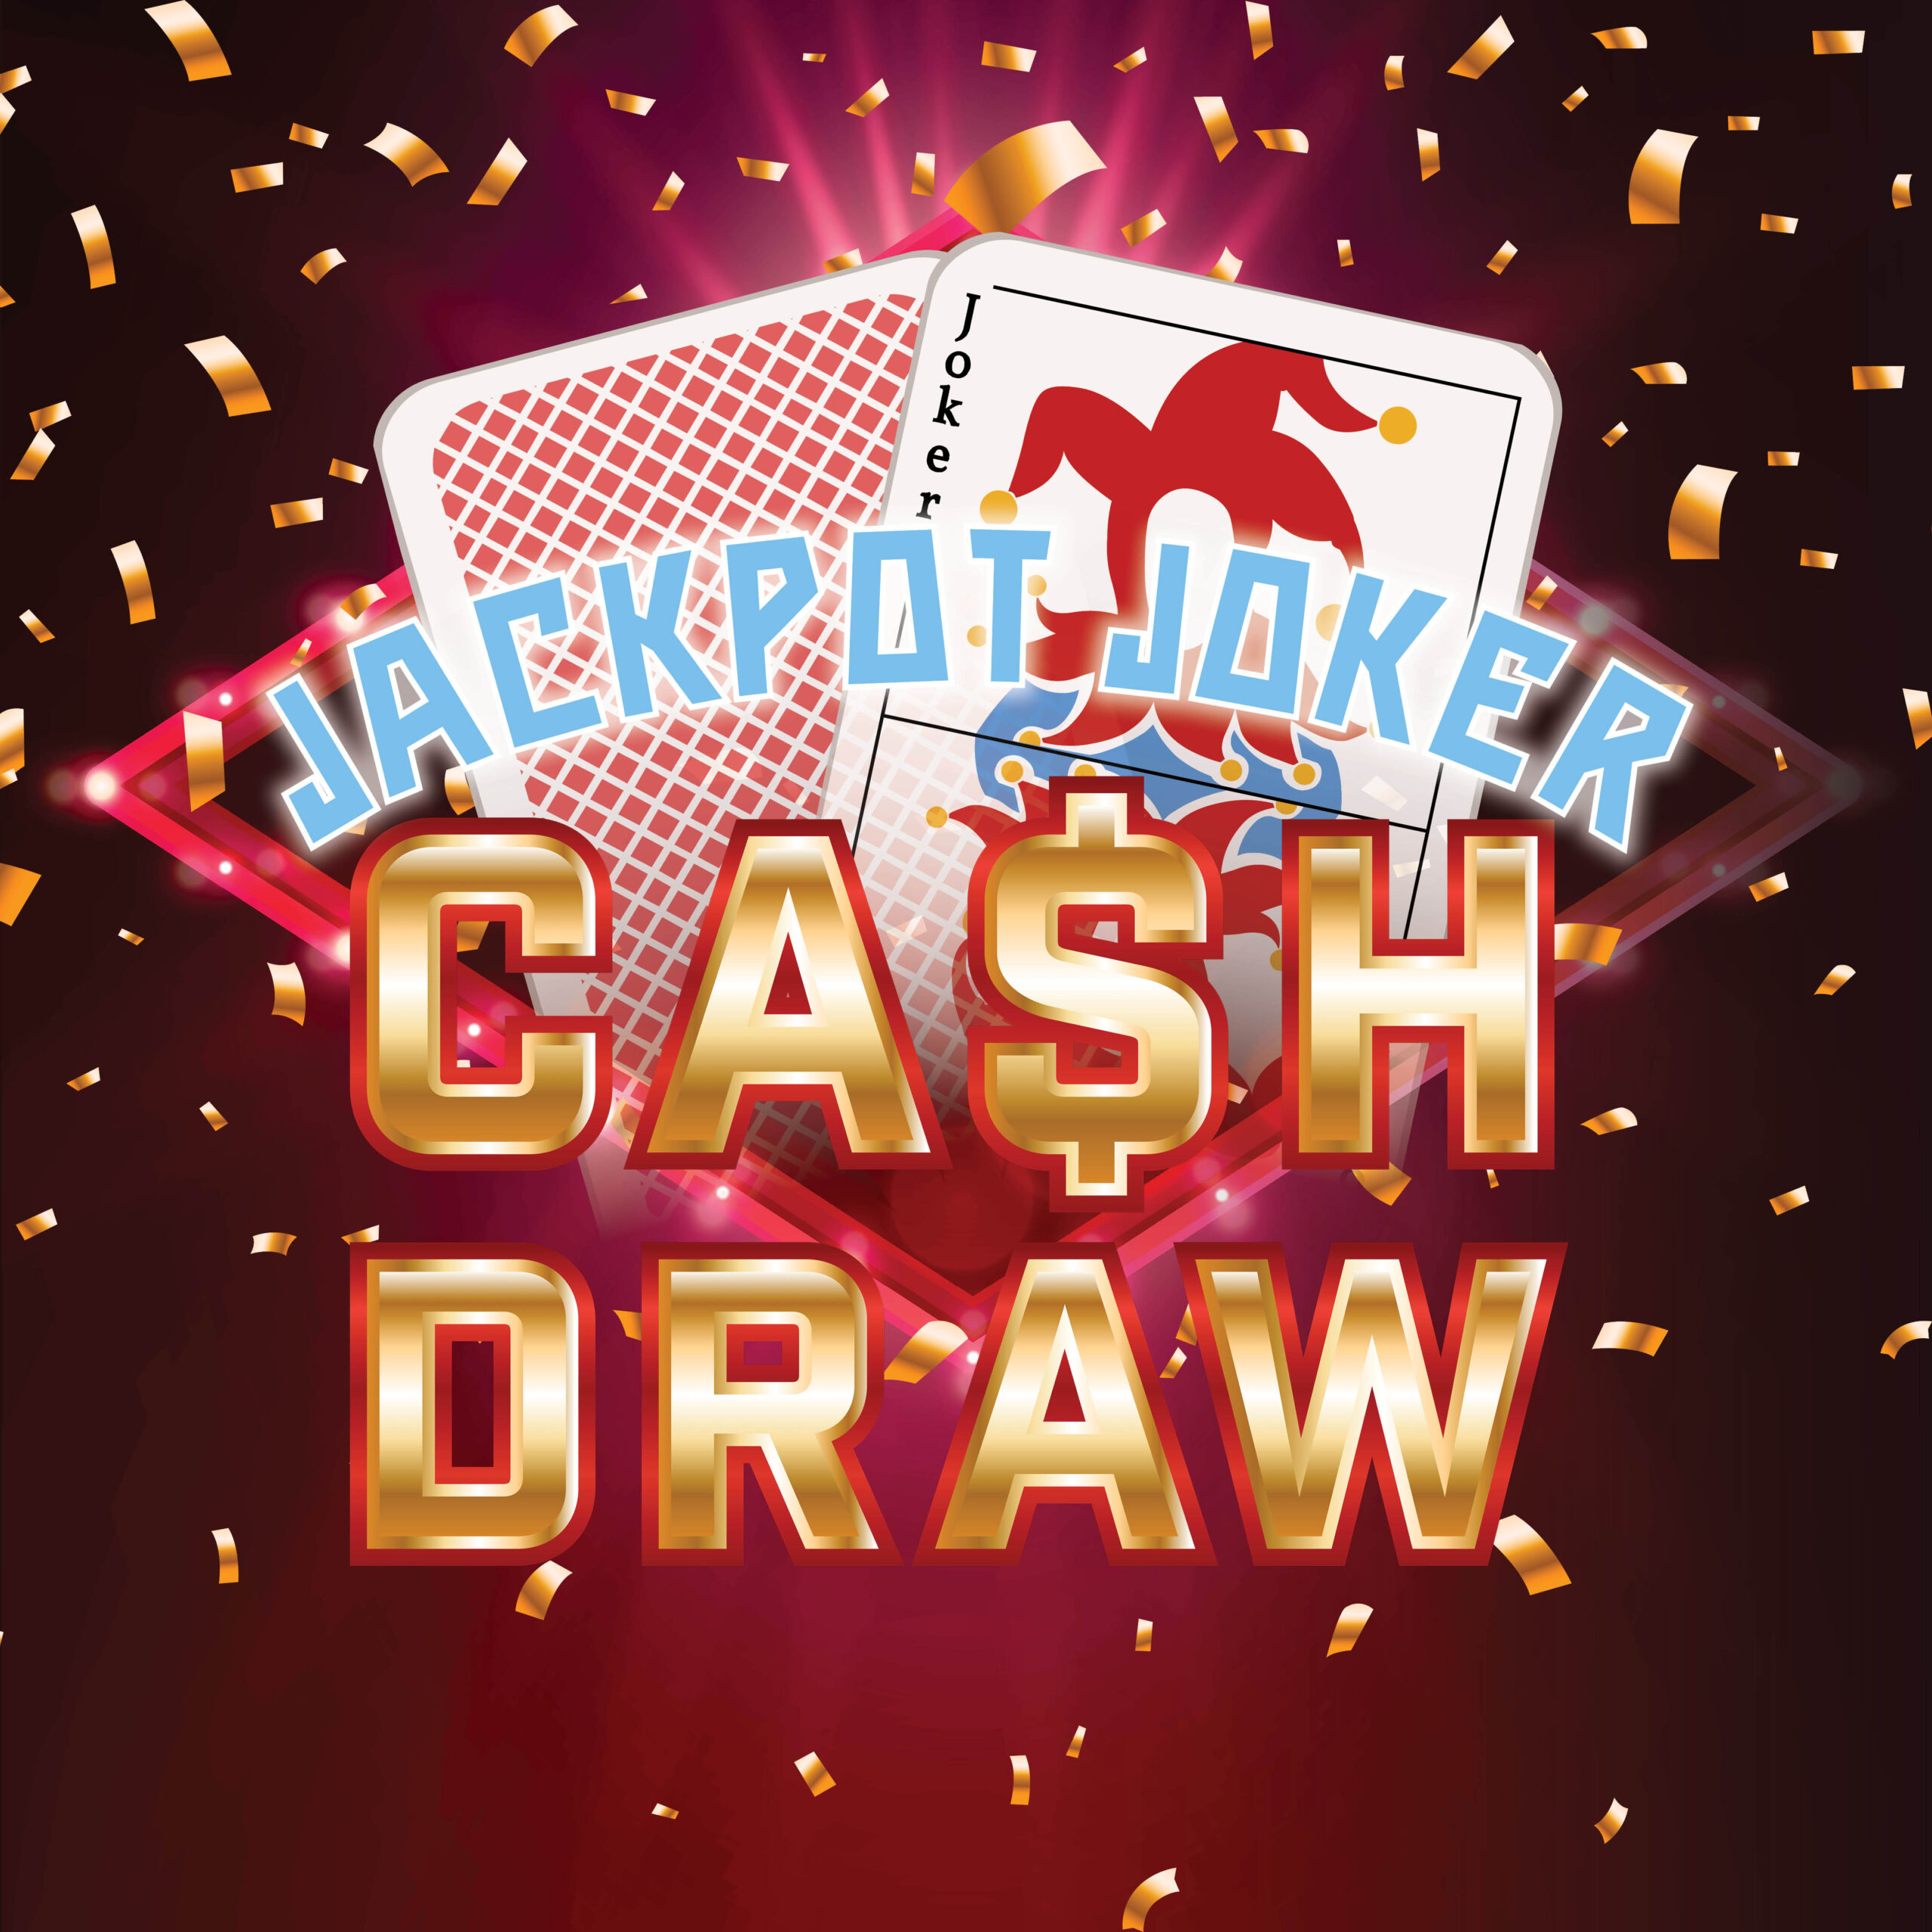 Jackpot Joker Cash Draw artwork